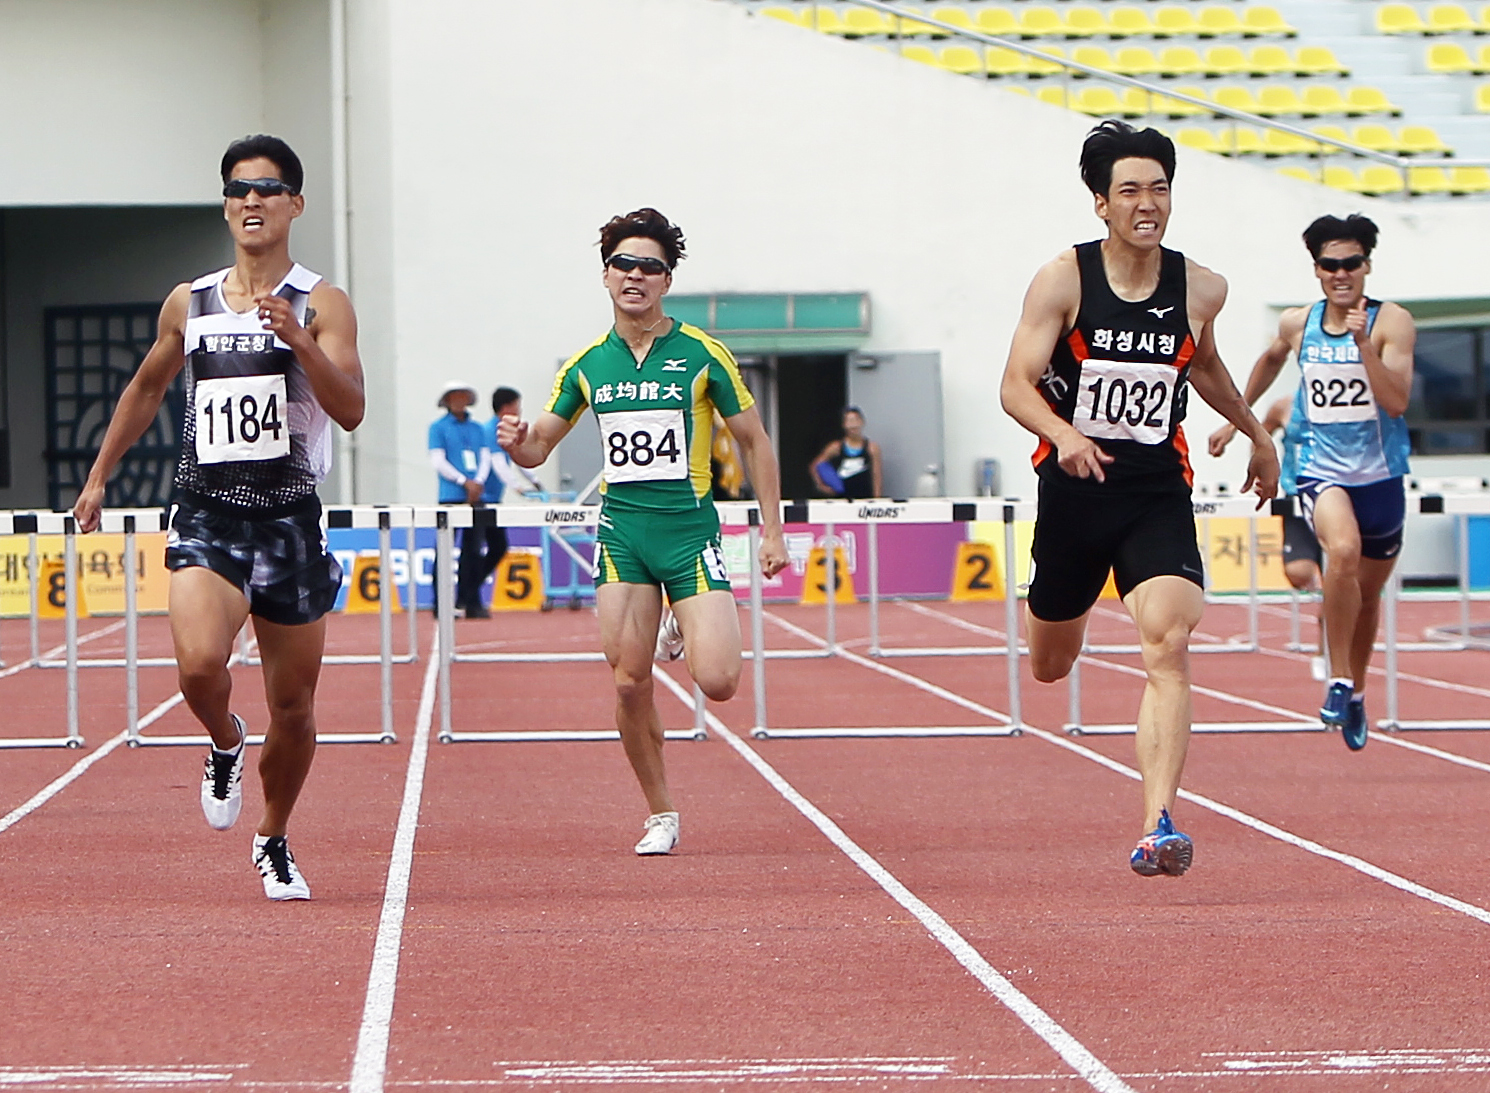 남자 400m허들 우승 황현우(배번1032, 우측 두 번째)